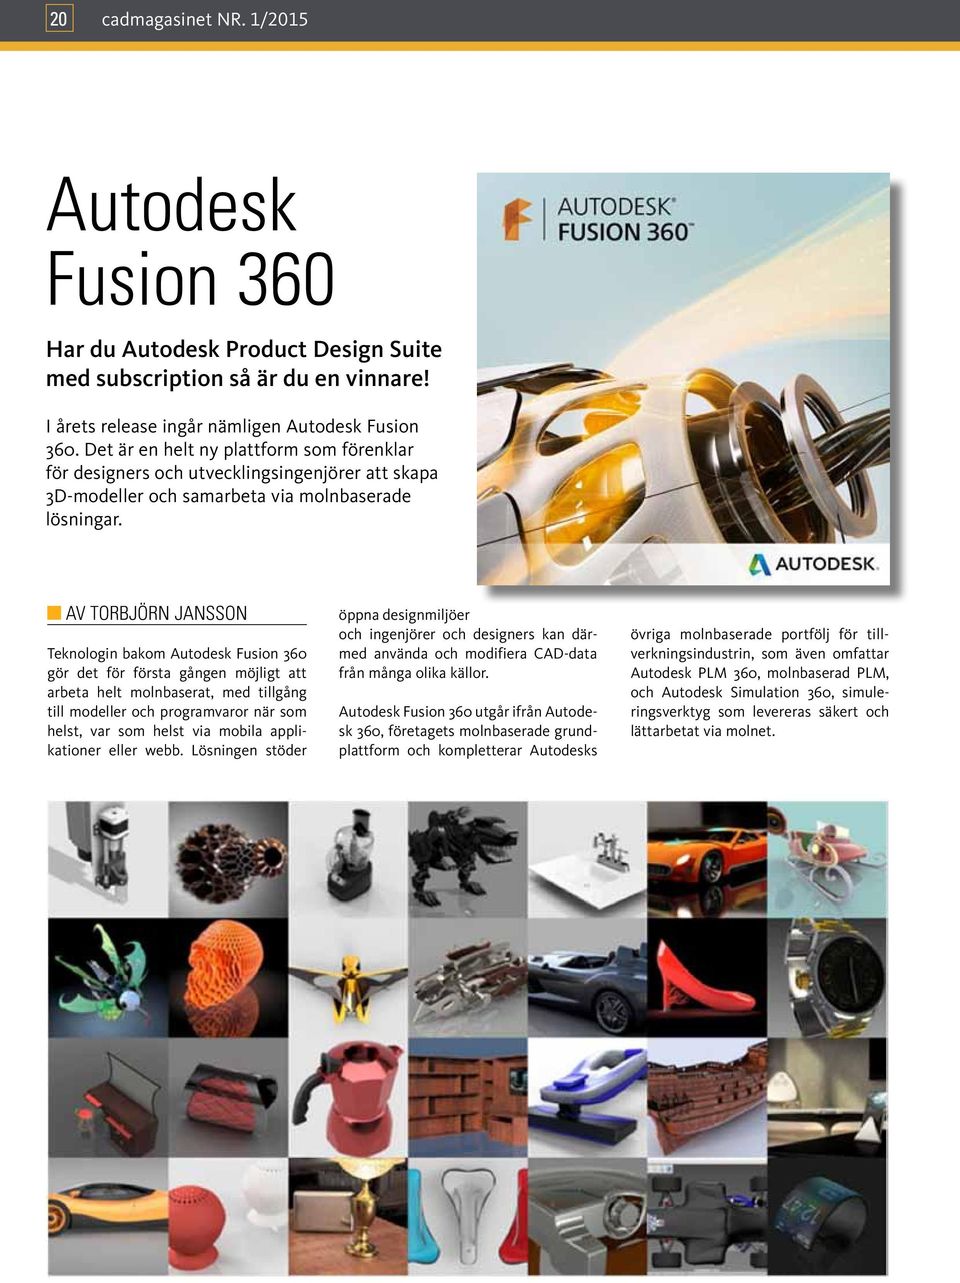 AV Torbjörn Jansson Teknologin bakom Autodesk Fusion 360 gör det för första gången möjligt att arbeta helt molnbaserat, med tillgång till modeller och programvaror när som helst, var som helst via